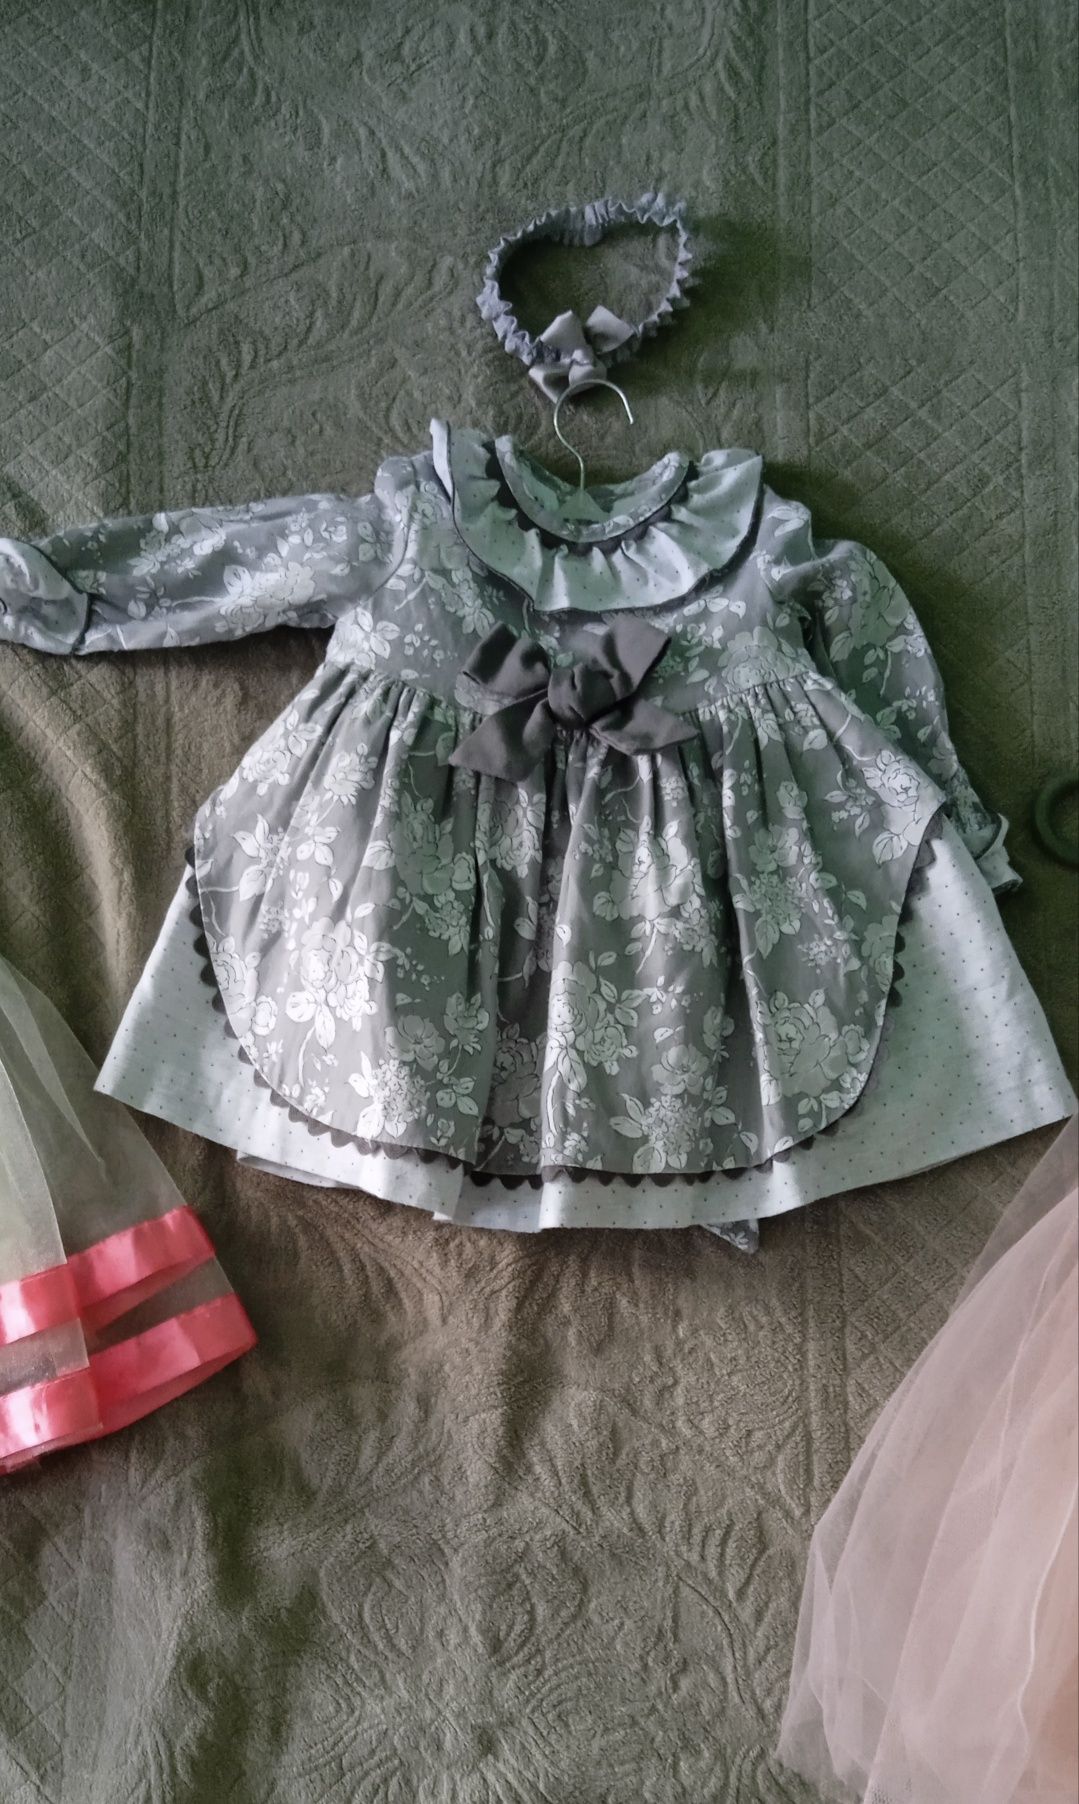 Дитяча сукня для дівчинки